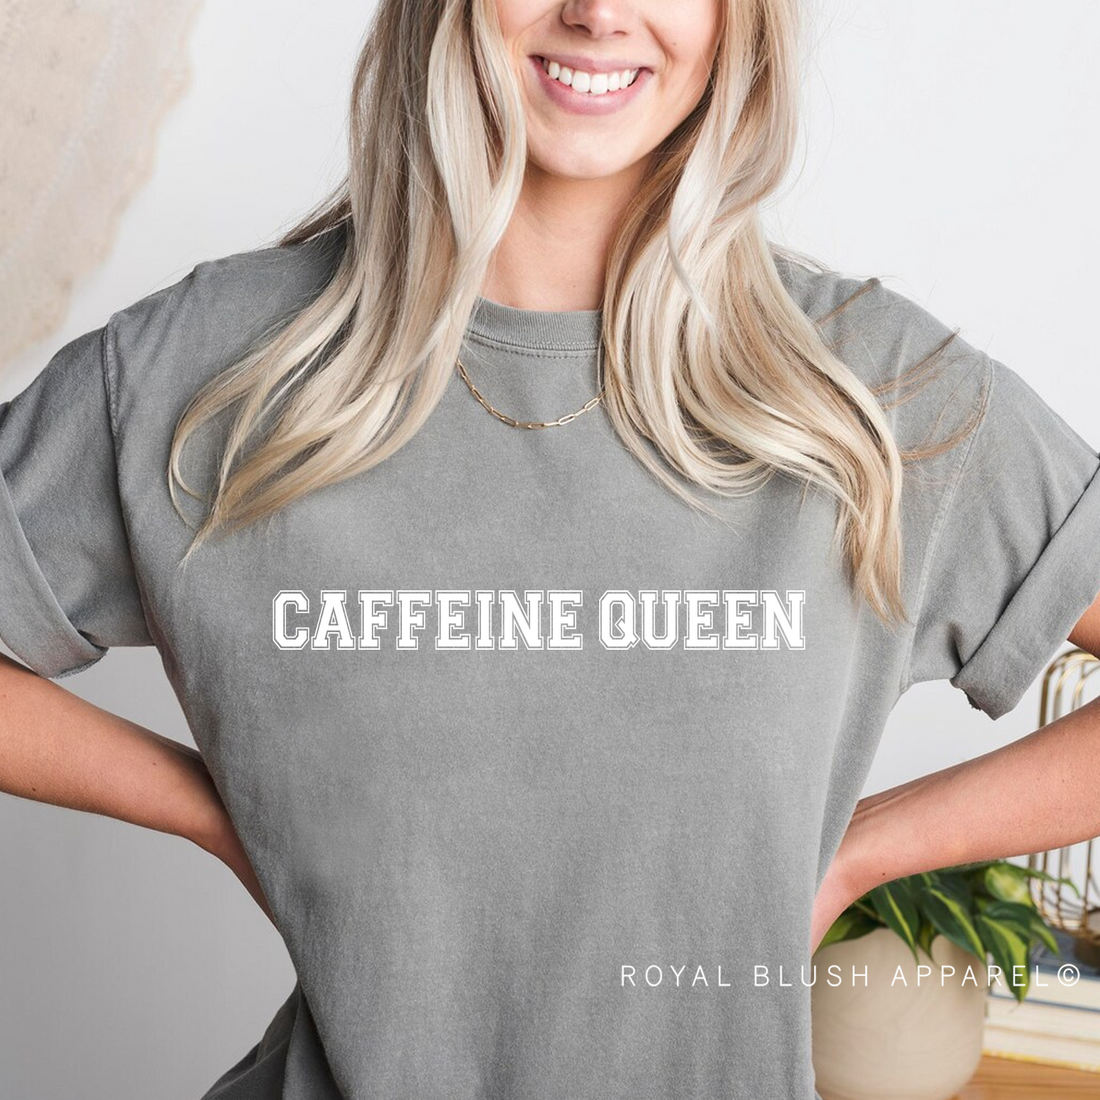 Caffeine Queen Screen Print Transfer